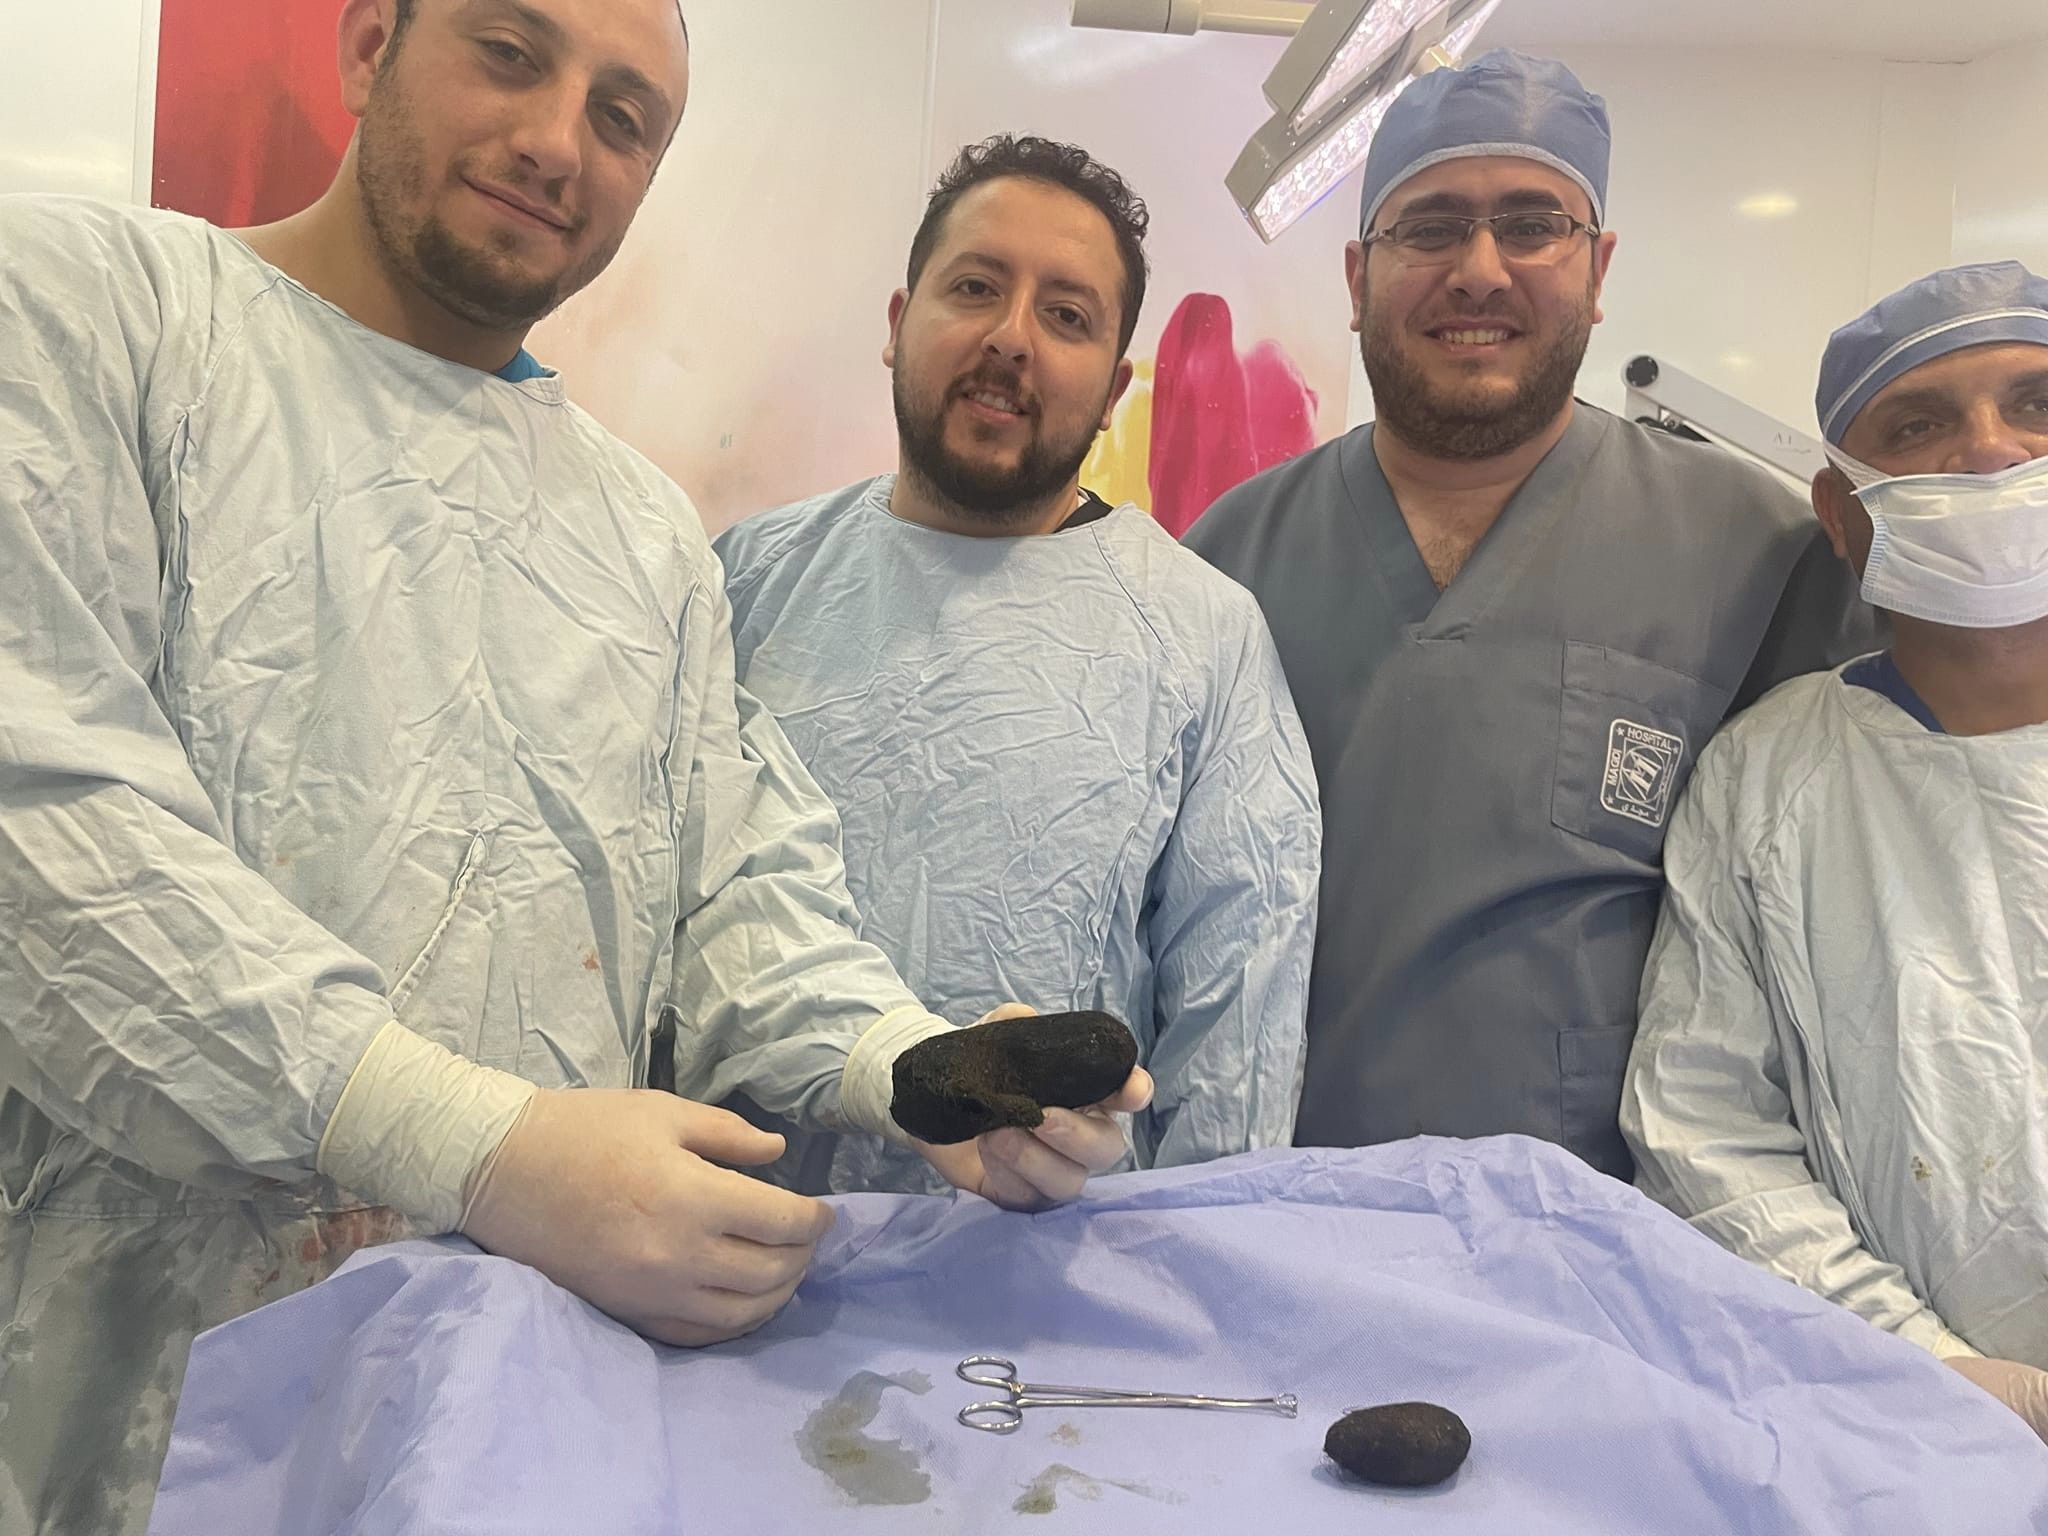 فريق جراحي بمستشفى أبو الريش ينجح في استخراج كتلتين شعر من أمعاء طفلة